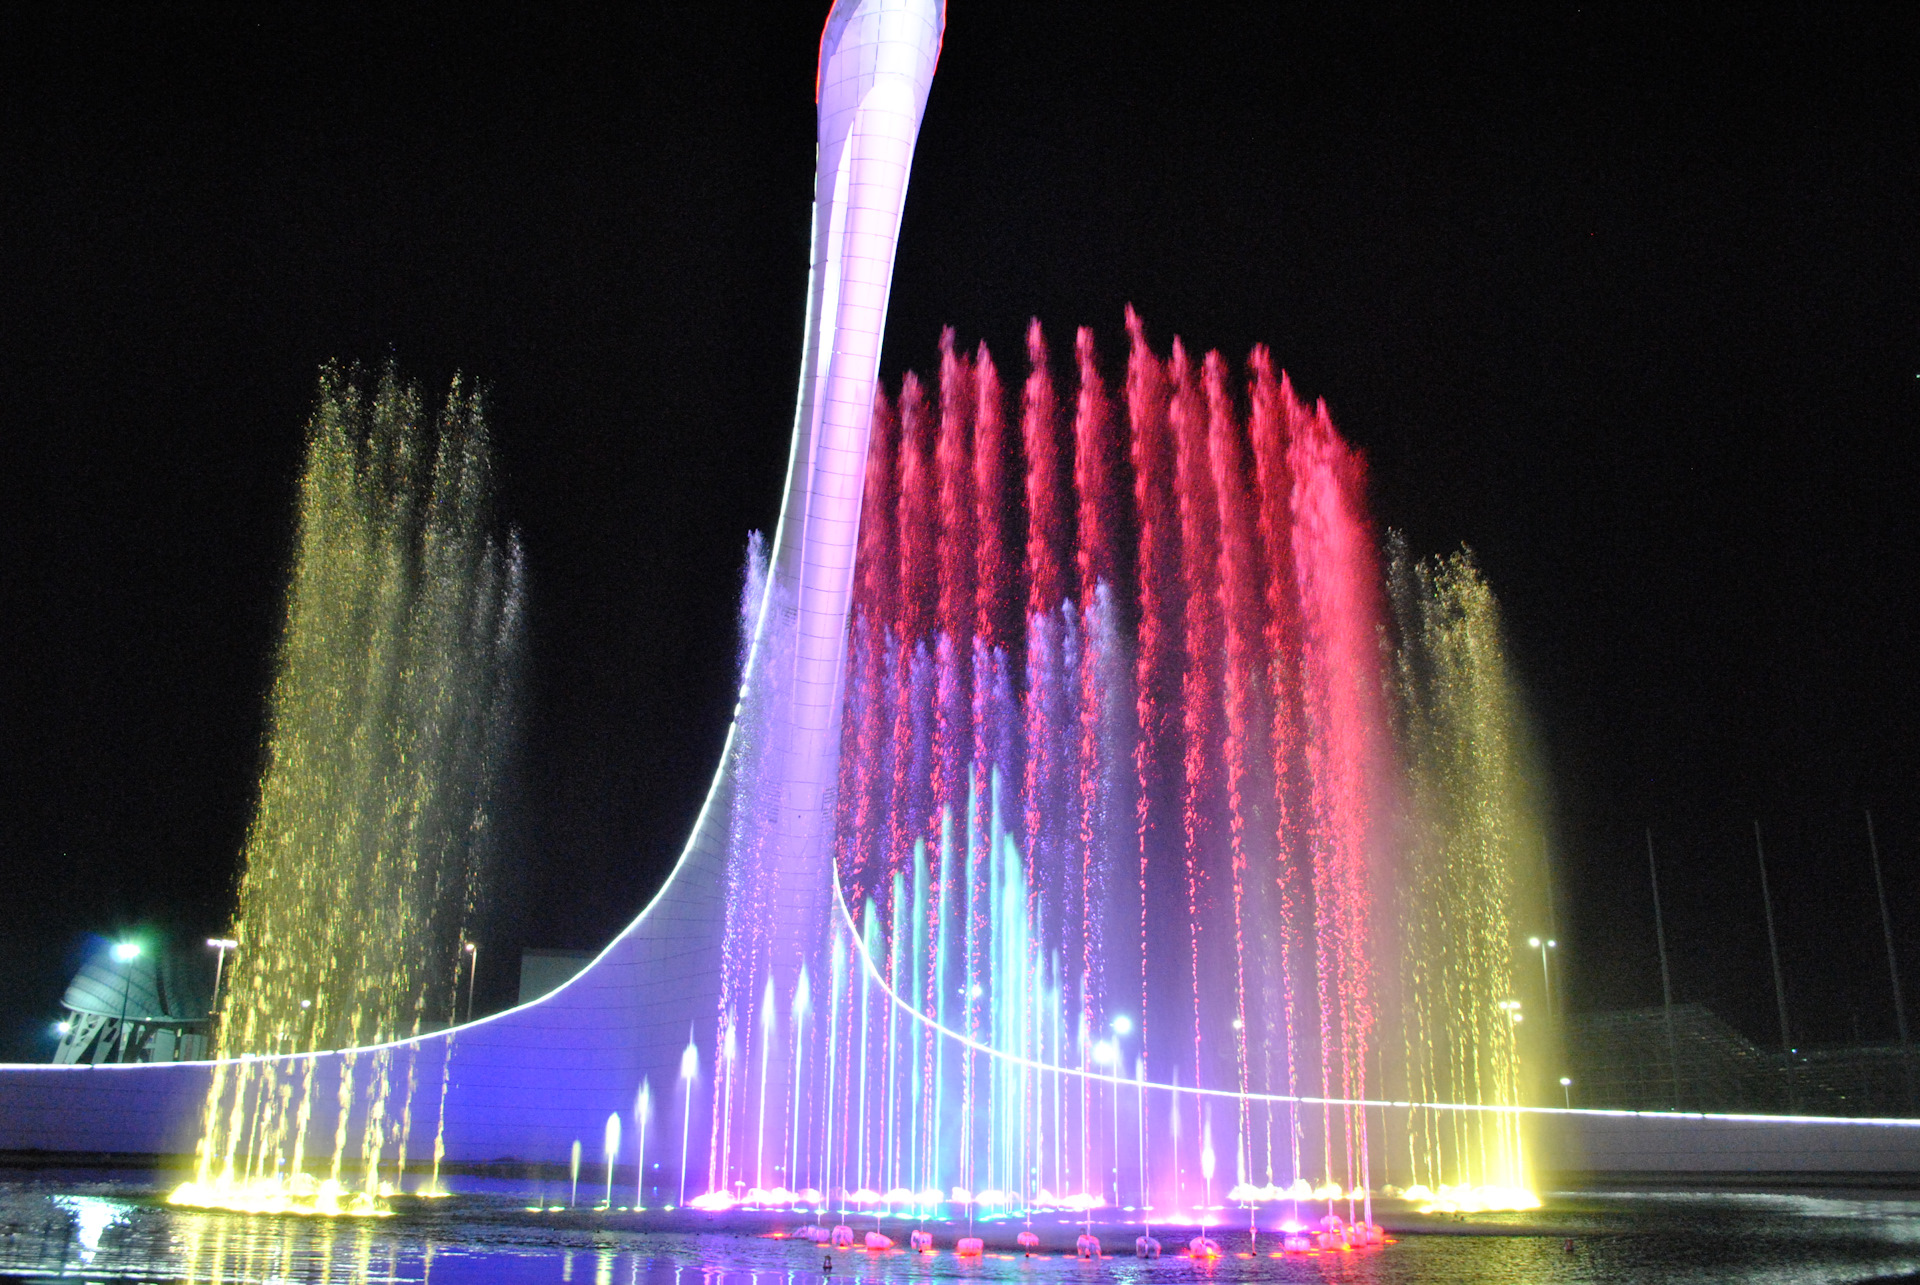 Сочи достопримечательности и развлечения. Олимпийский фонтан Сочи. Поющие фонтаны в Адлере Сочи парк. Фонтан Адлер Олимпийский парк. Сочи парк фонтан.